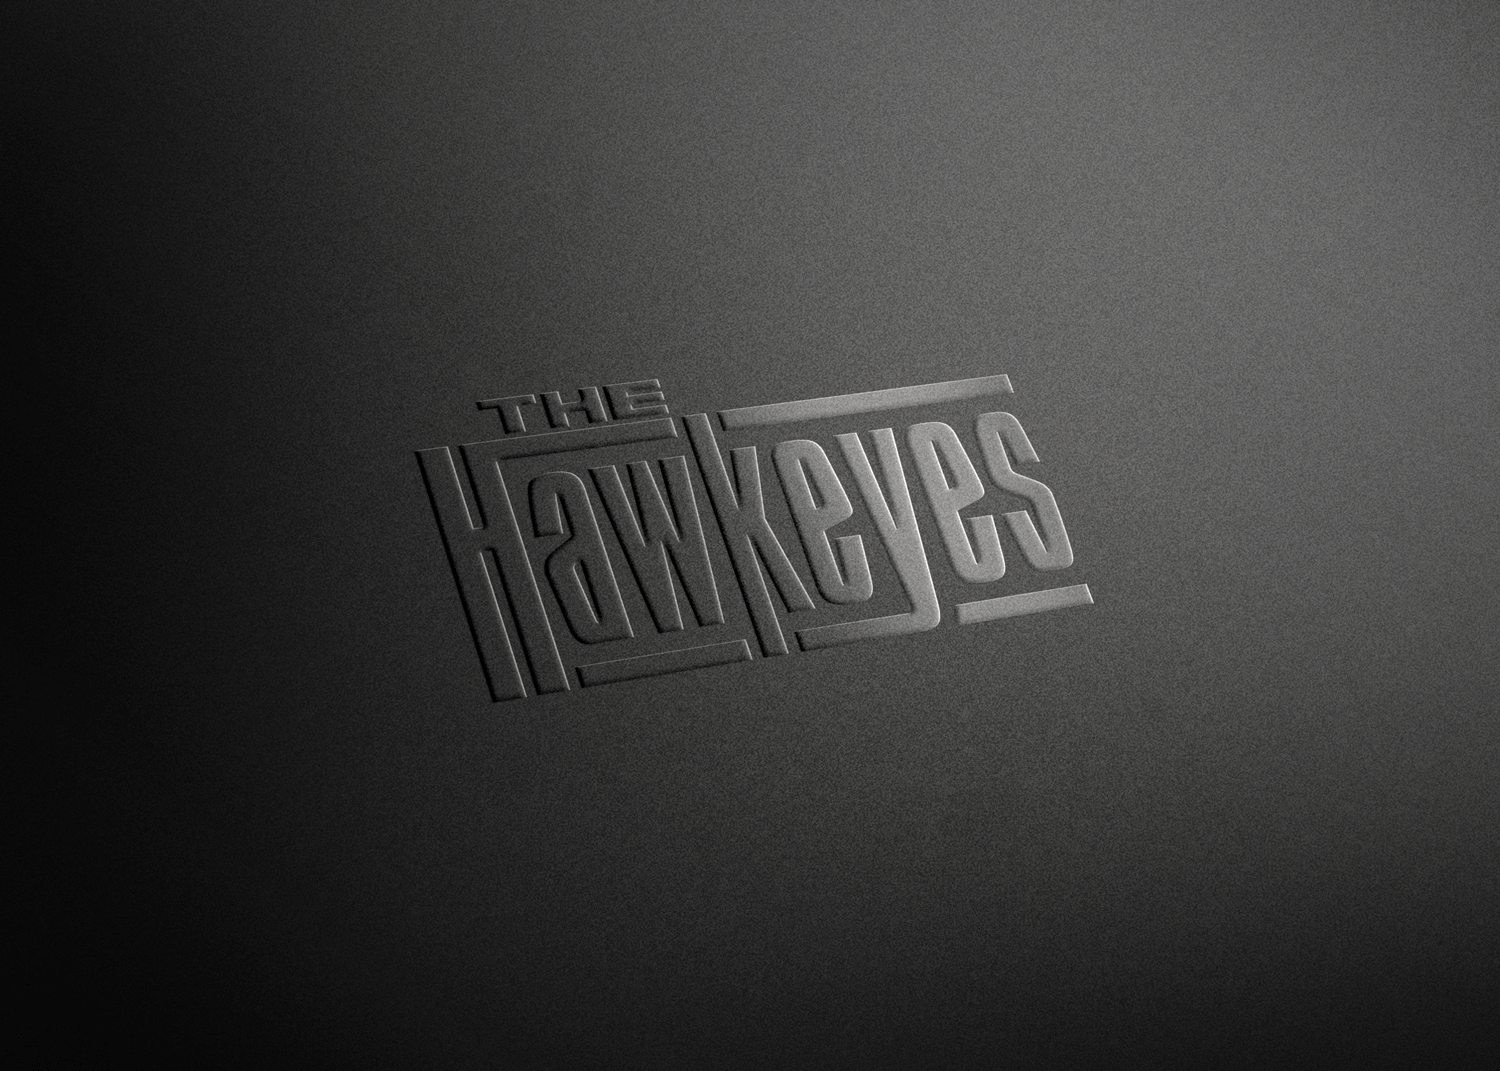 The Hawkeyes logo design